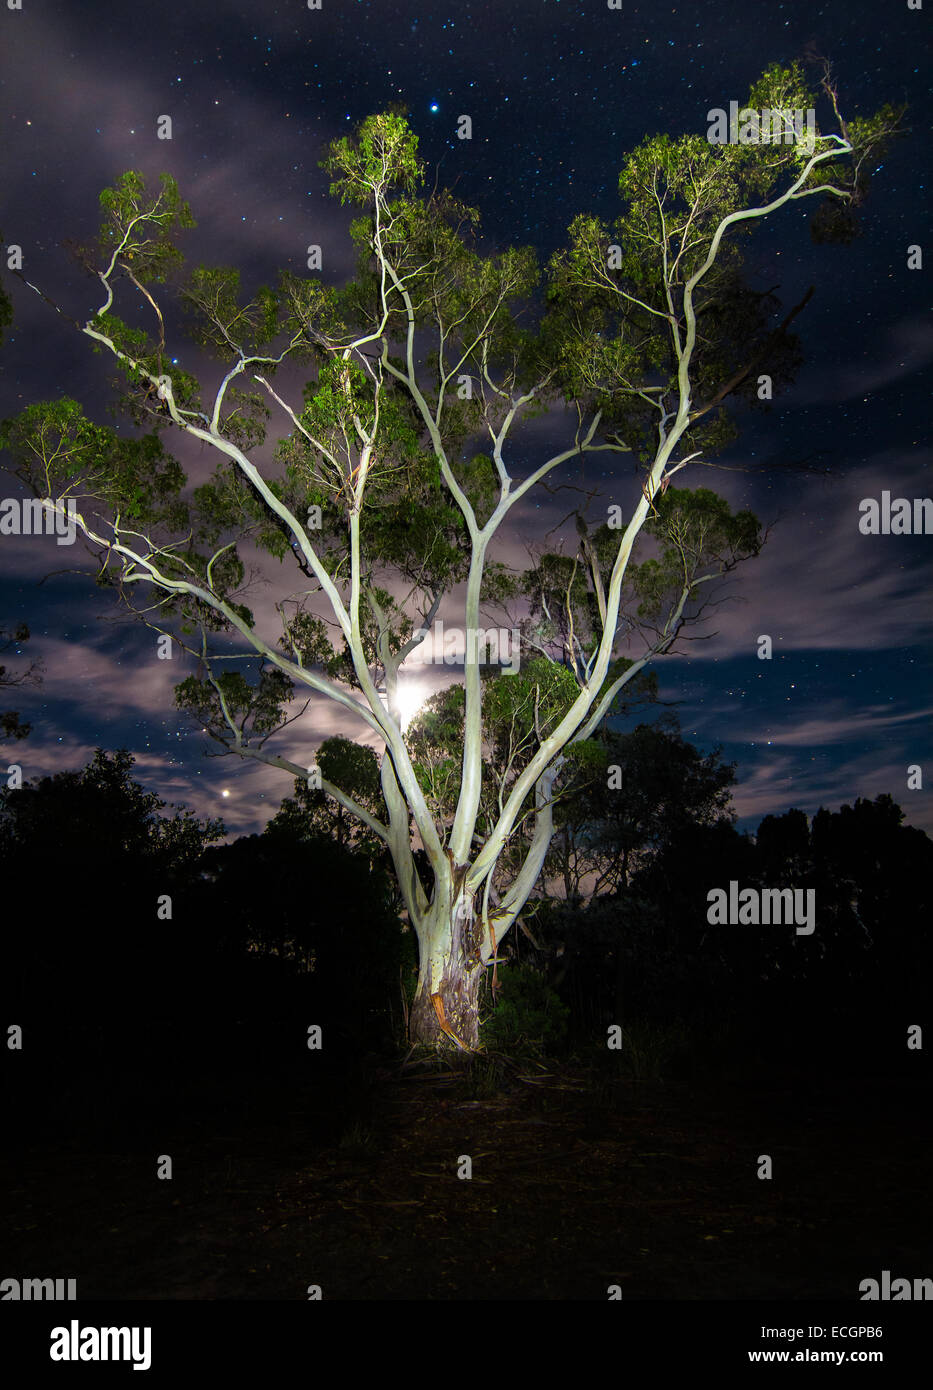 Arbre généalogique de la foudre - Eucalyptus, illuminé la nuit, avec la Lune Banque D'Images